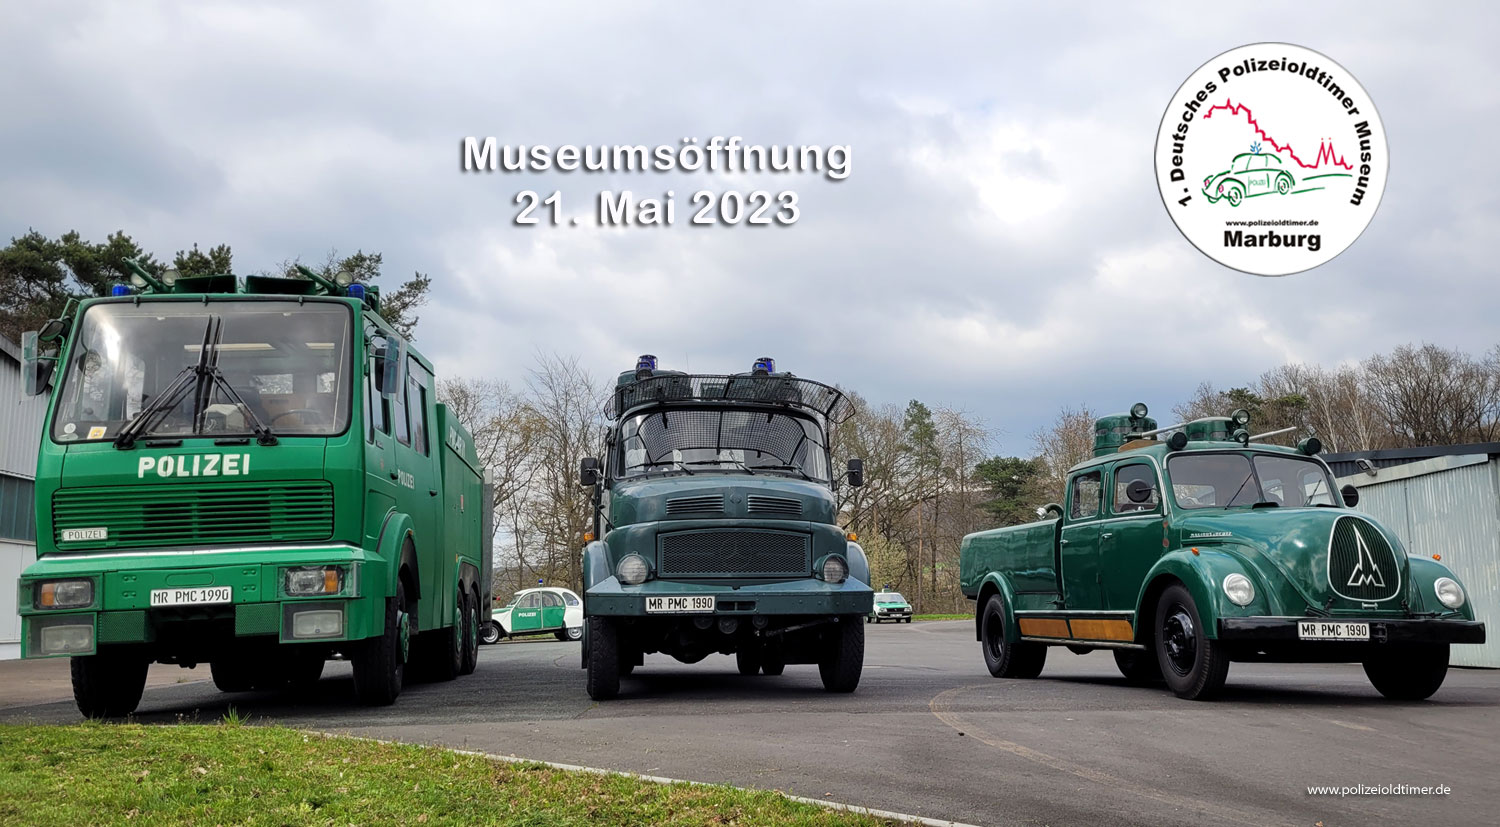 Polizeioldtimer Museum Marburg öffnet am 21. Mai 2023 - hier mit drei Wasserwerfern